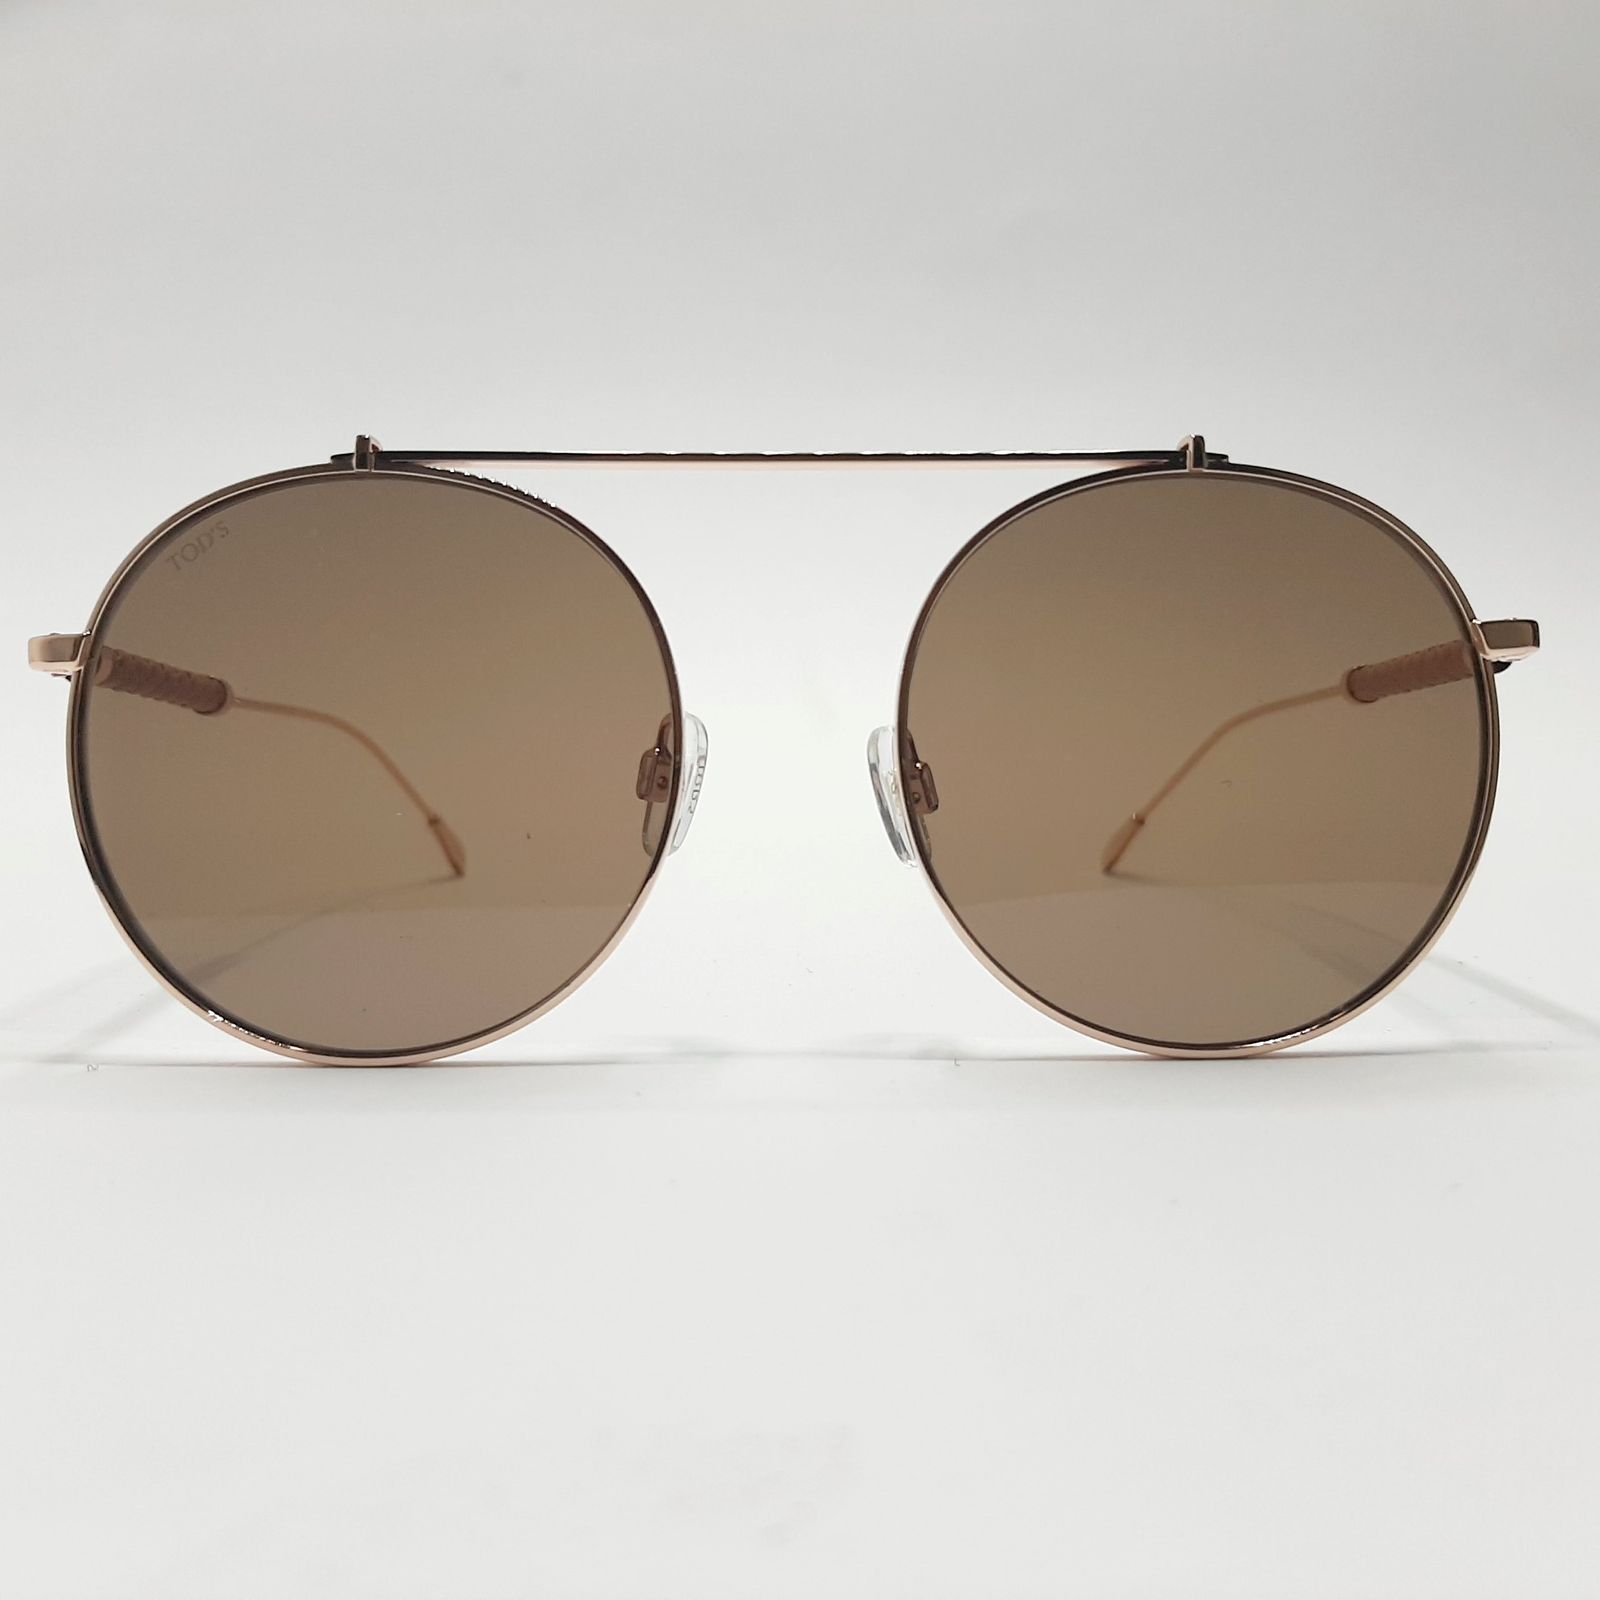 عینک آفتابی تادس مدل TO198c2 -  - 3